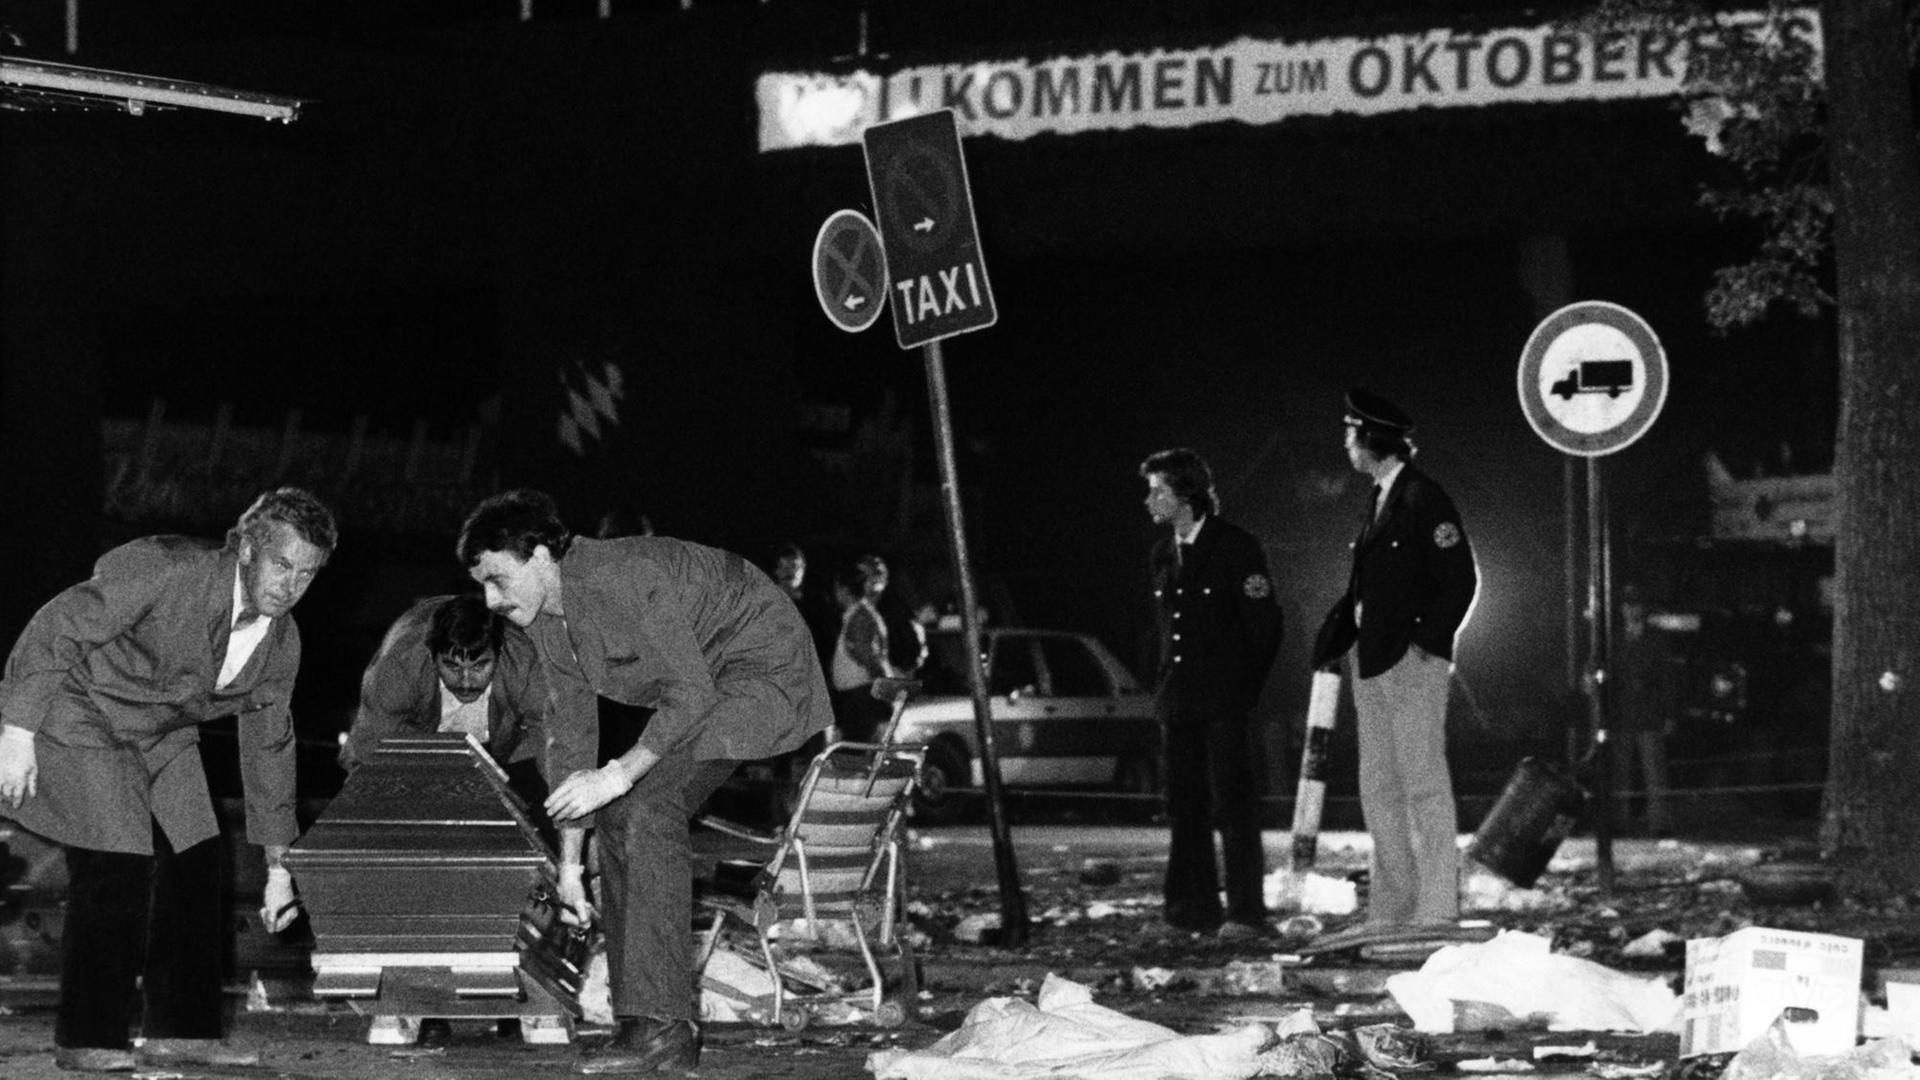 Ein Sarg wird nach dem Bombenanschlag auf dem Münchener Oktoberfest am 26.09.1980 vom verwüsteten Tatort weggetragen. Die Bombe befand sich vermutlich in dem Papierkorb an einem Verkehrsschild rechts im Hintergrund.